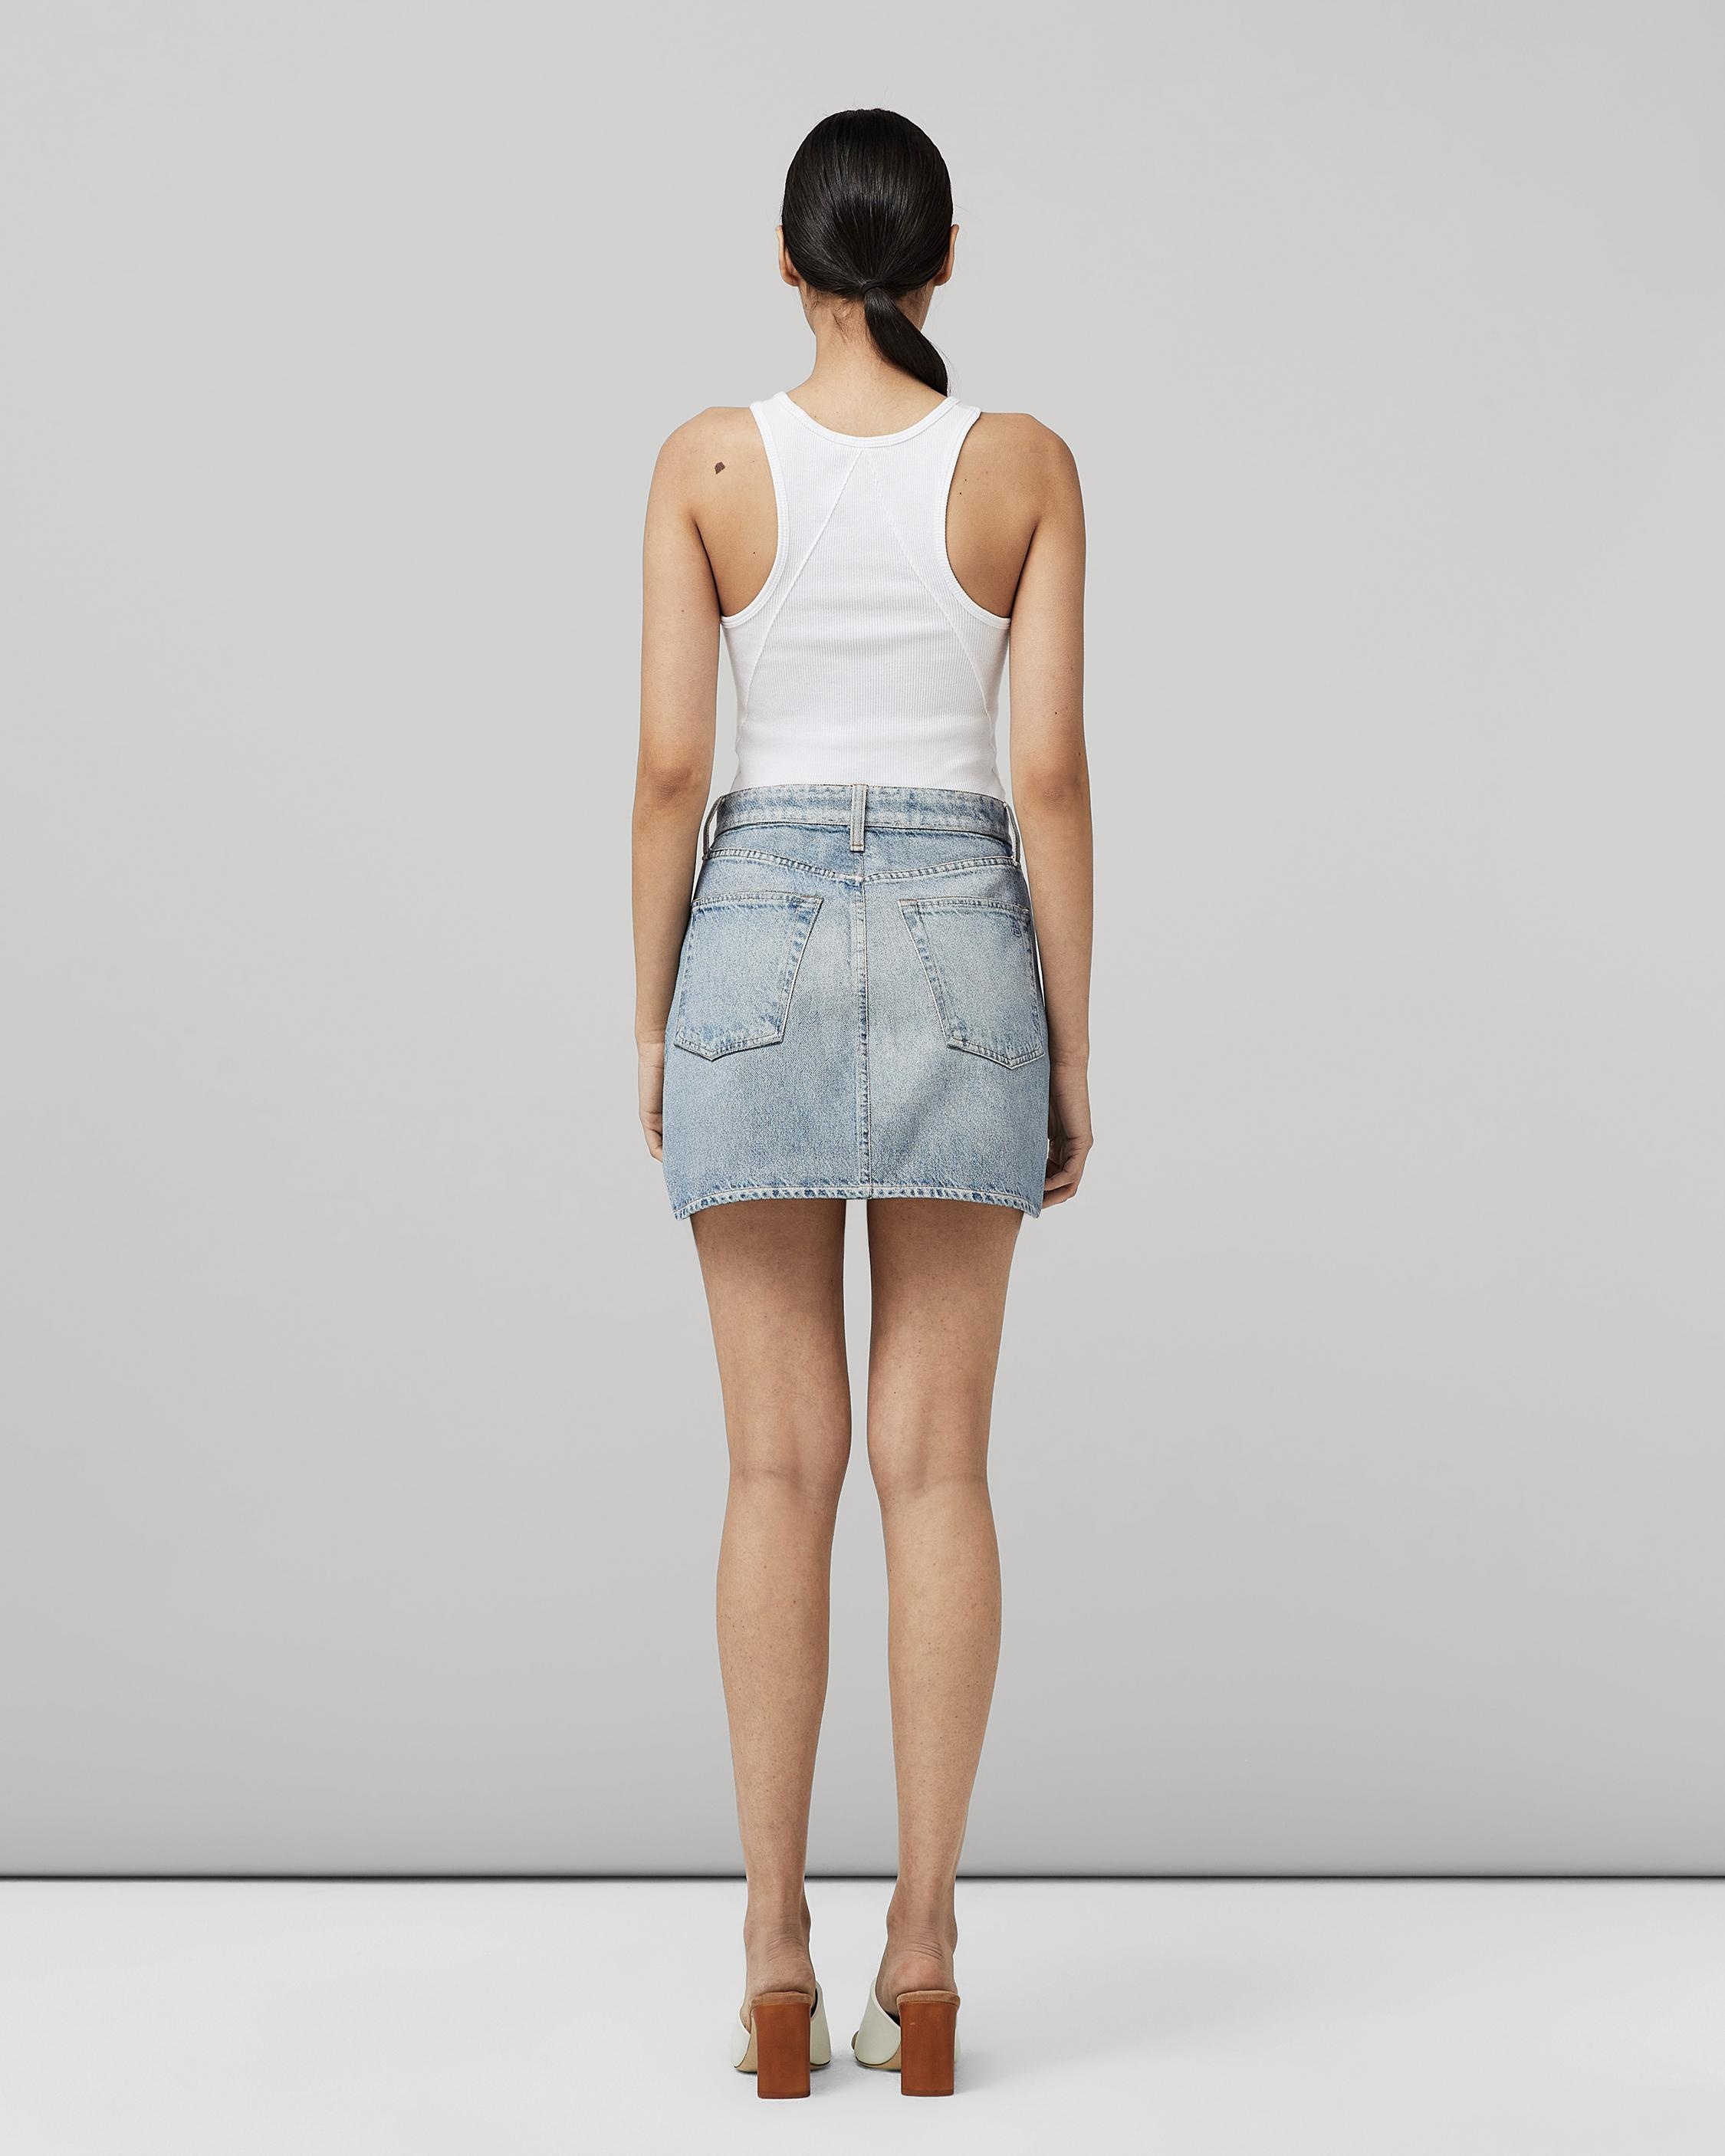 Canvas Miramar Mini Skirt
Trompe L'oeil Cotton Skirt - 5